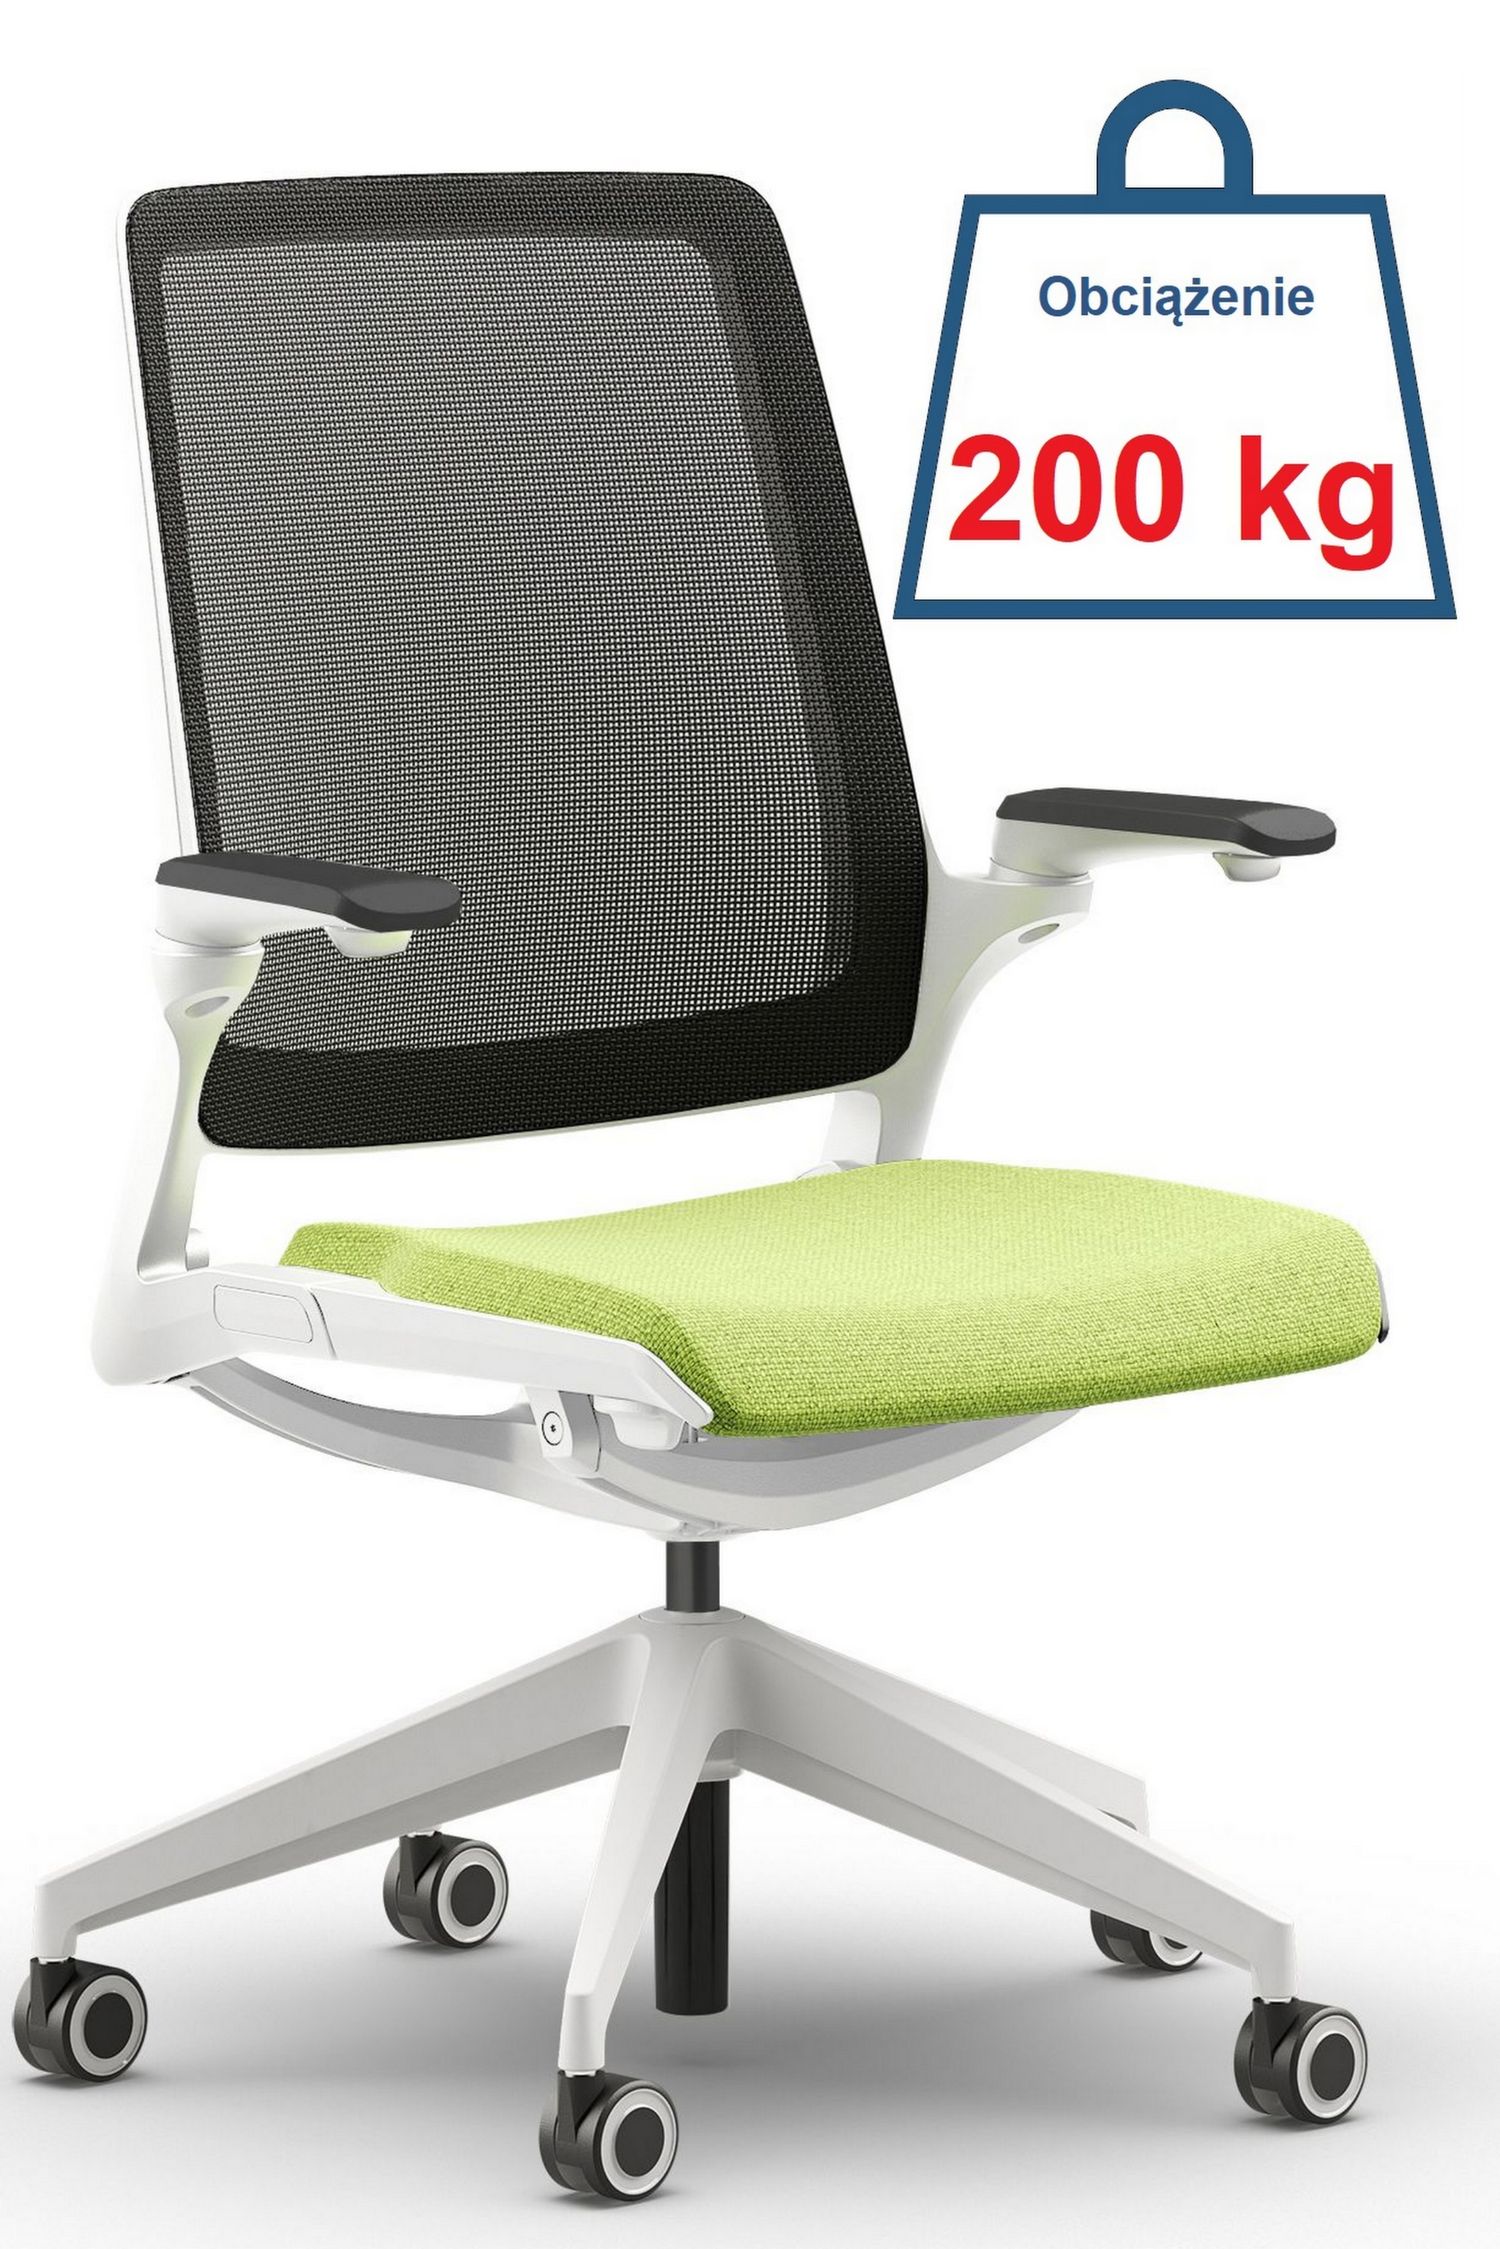 SMART to fotel biurowy obrotowy, który idealnie spełnia wymagania do ergonomicznej pracy zarówno w biurze, jak i w domu, dostosowany jest do potrzeb pracy z urządzeniami przenośnymi jak i do pracy klasycznej.